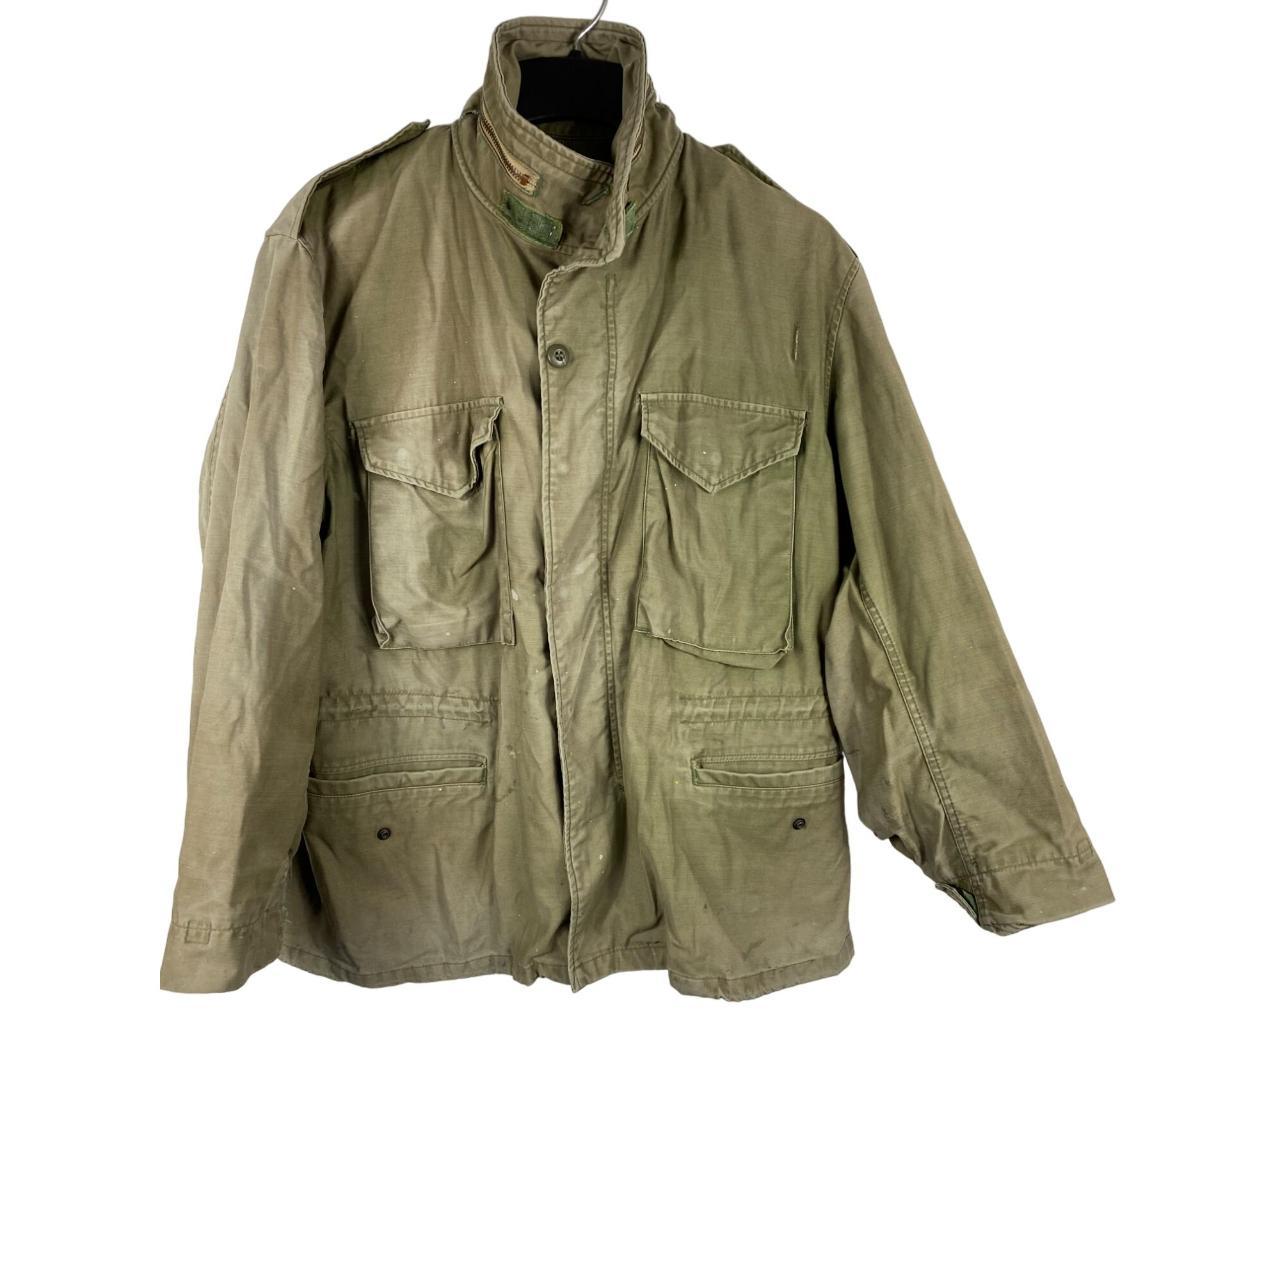 Vintage Military OG 107 Field Jacket Men's Medium... - Depop